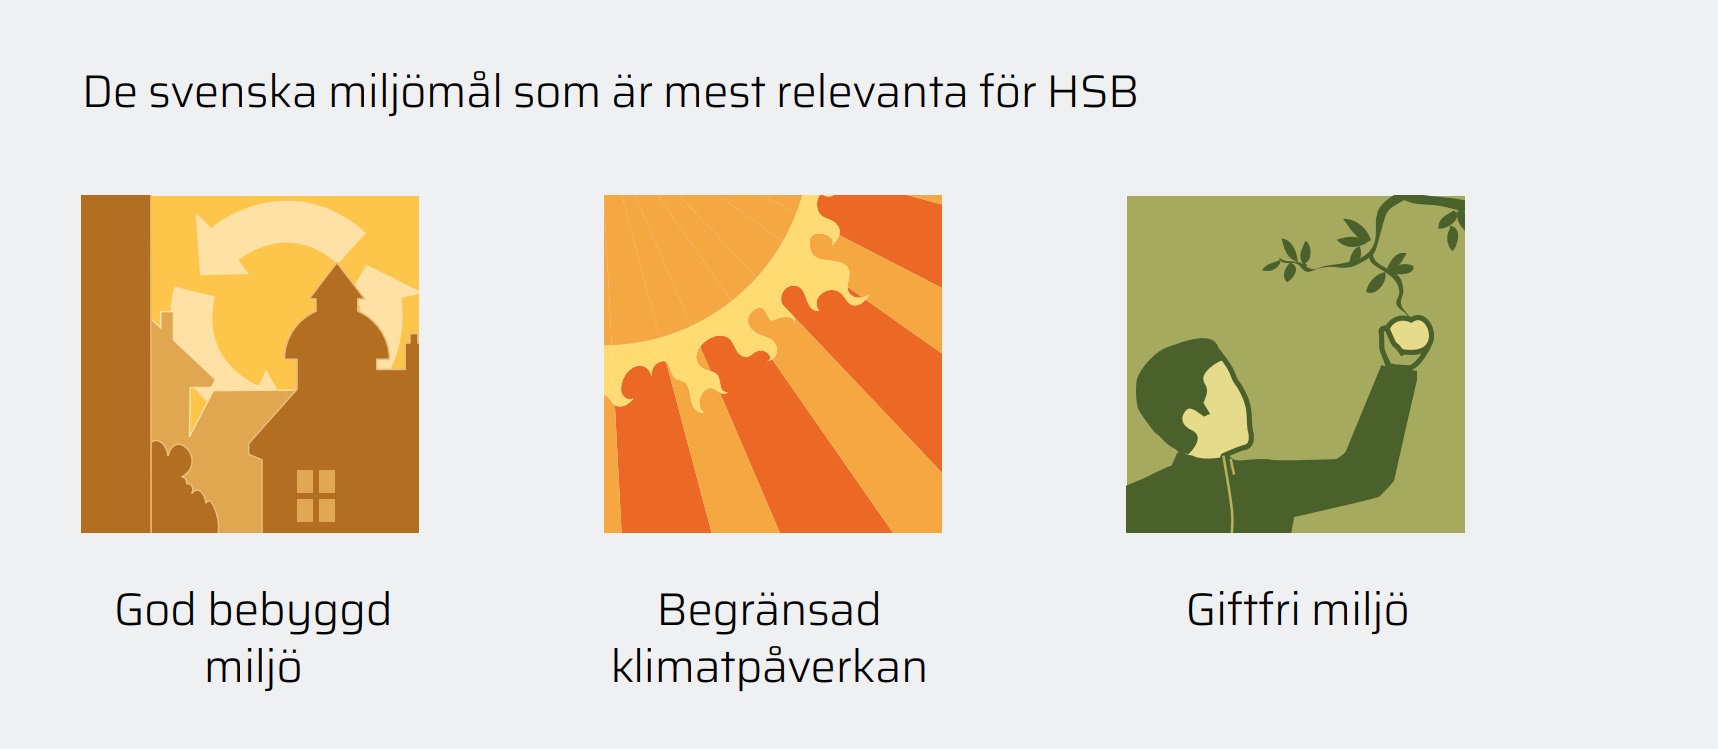 De svenska miljömål som är mest relevanta för HSB.